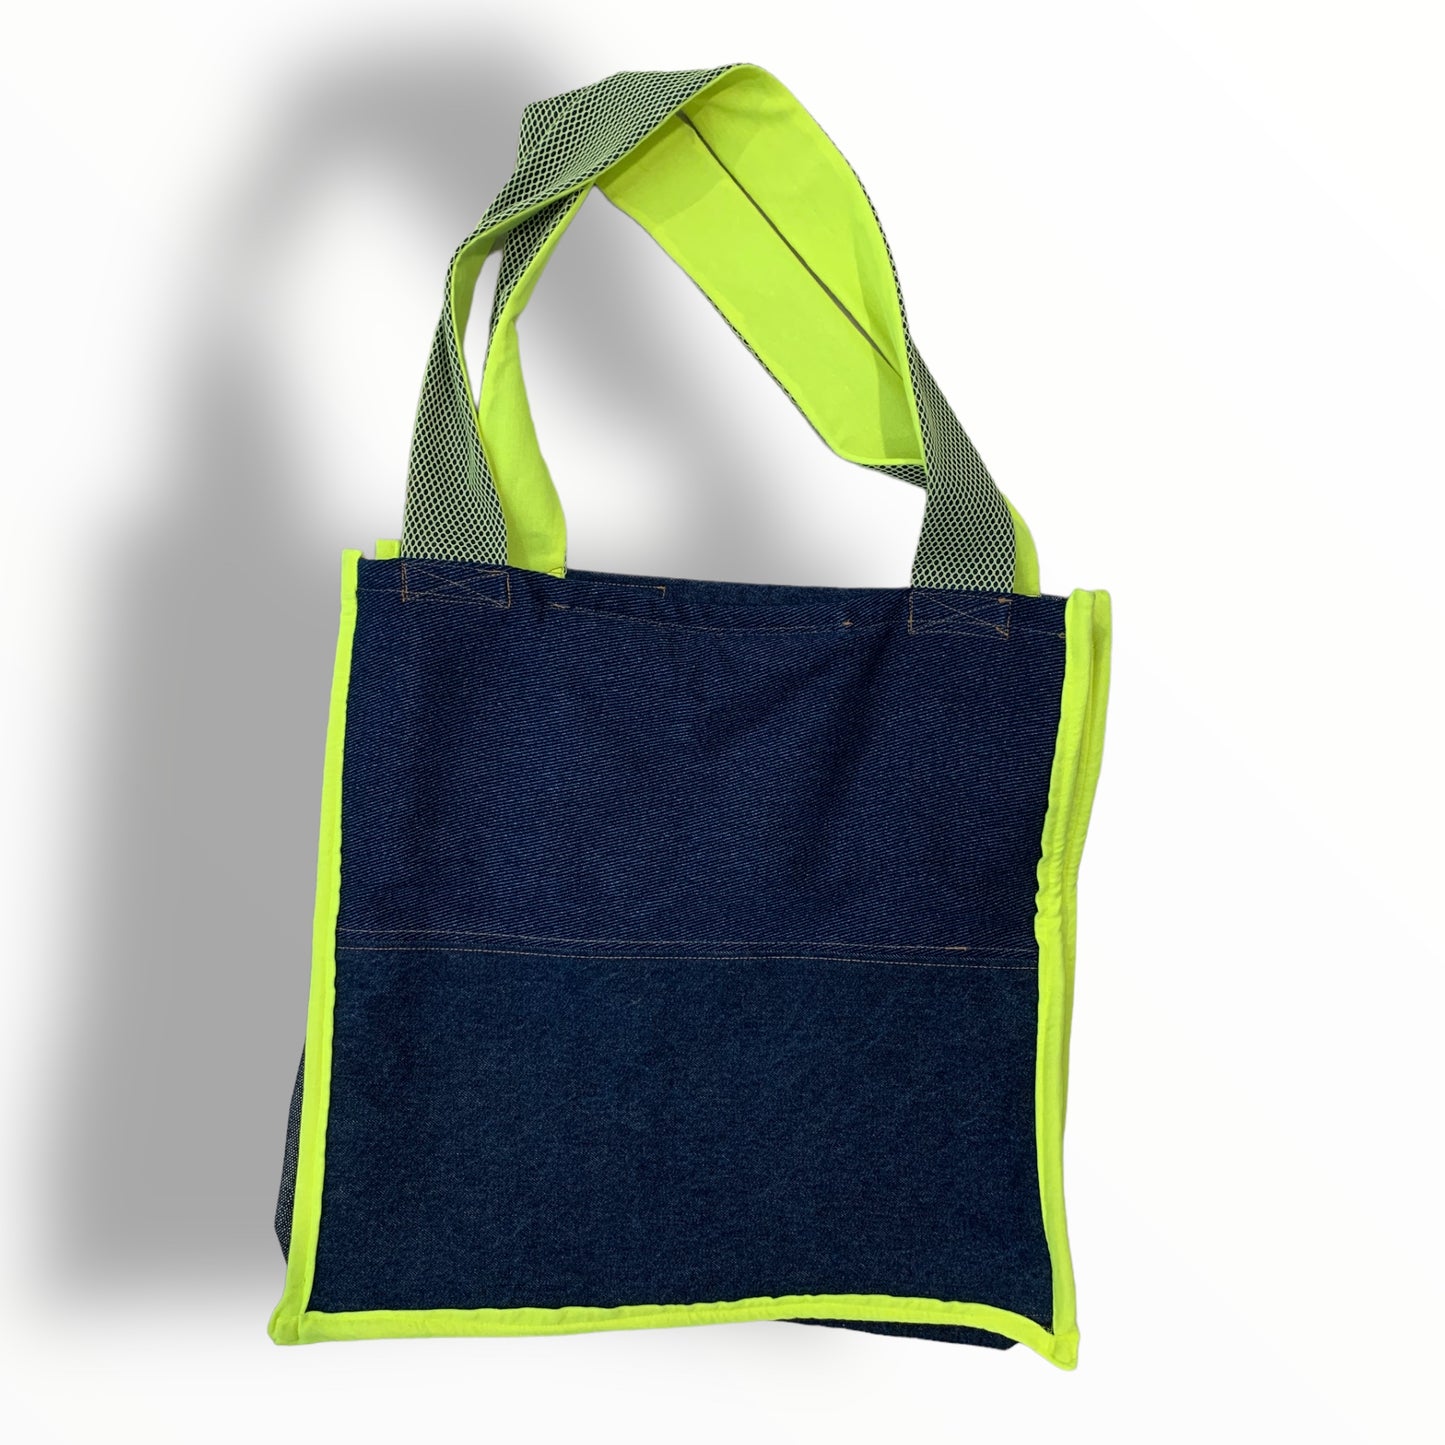 Maxi bag Net + Neon